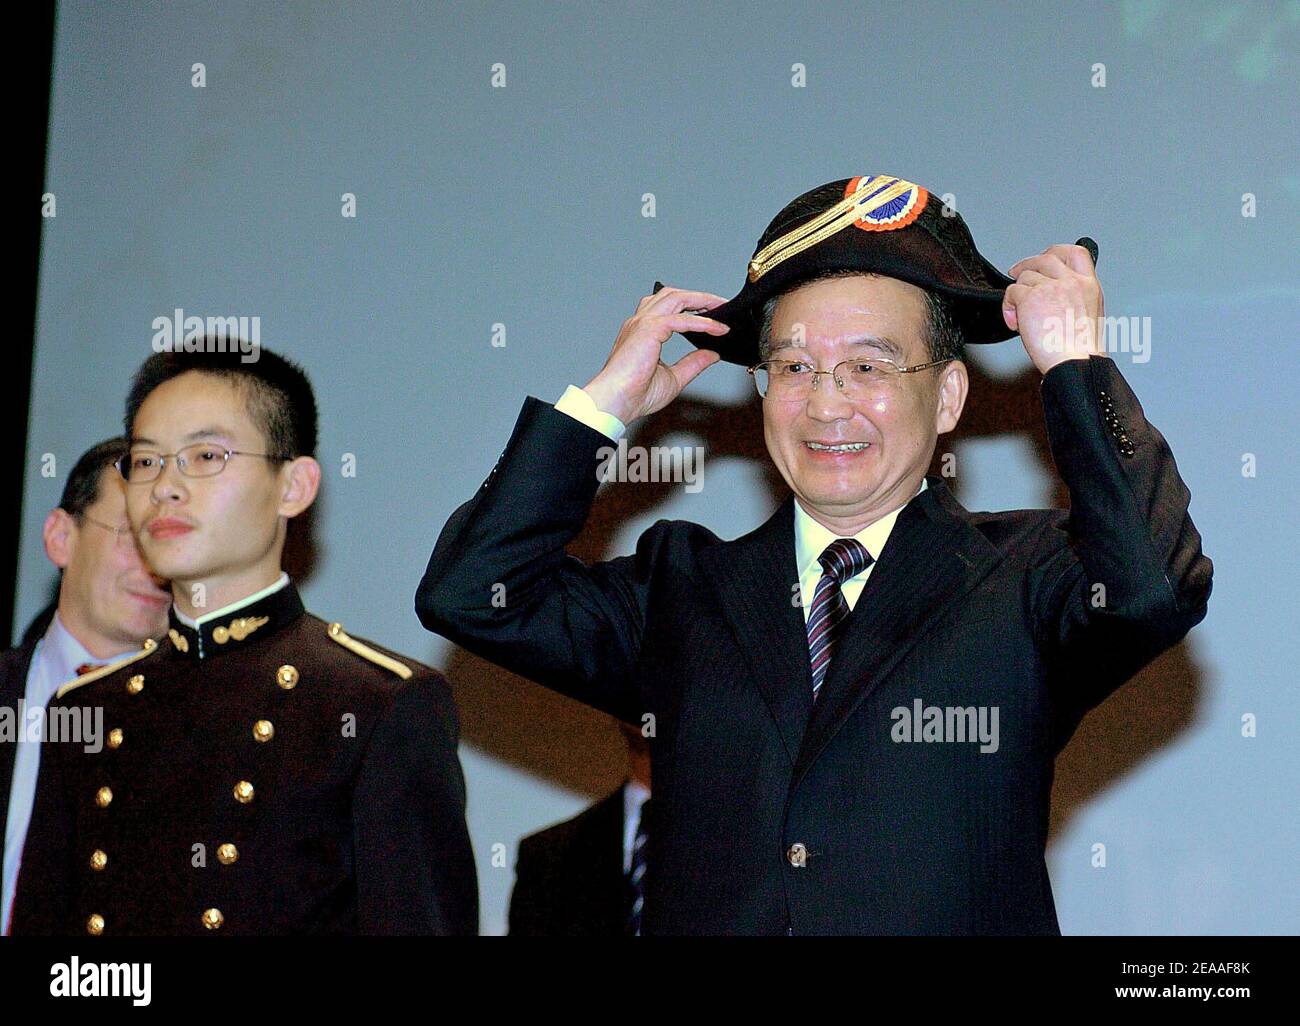 Le Premier ministre chinois Wen Jiabao s'applique alors qu'il porte le  chapeau traditionnel de l'école Polytechnique d'élite de l'ingénieur  militaire français, le 6 décembre 2005, à Palaiseau, au sud de Paris. Wen